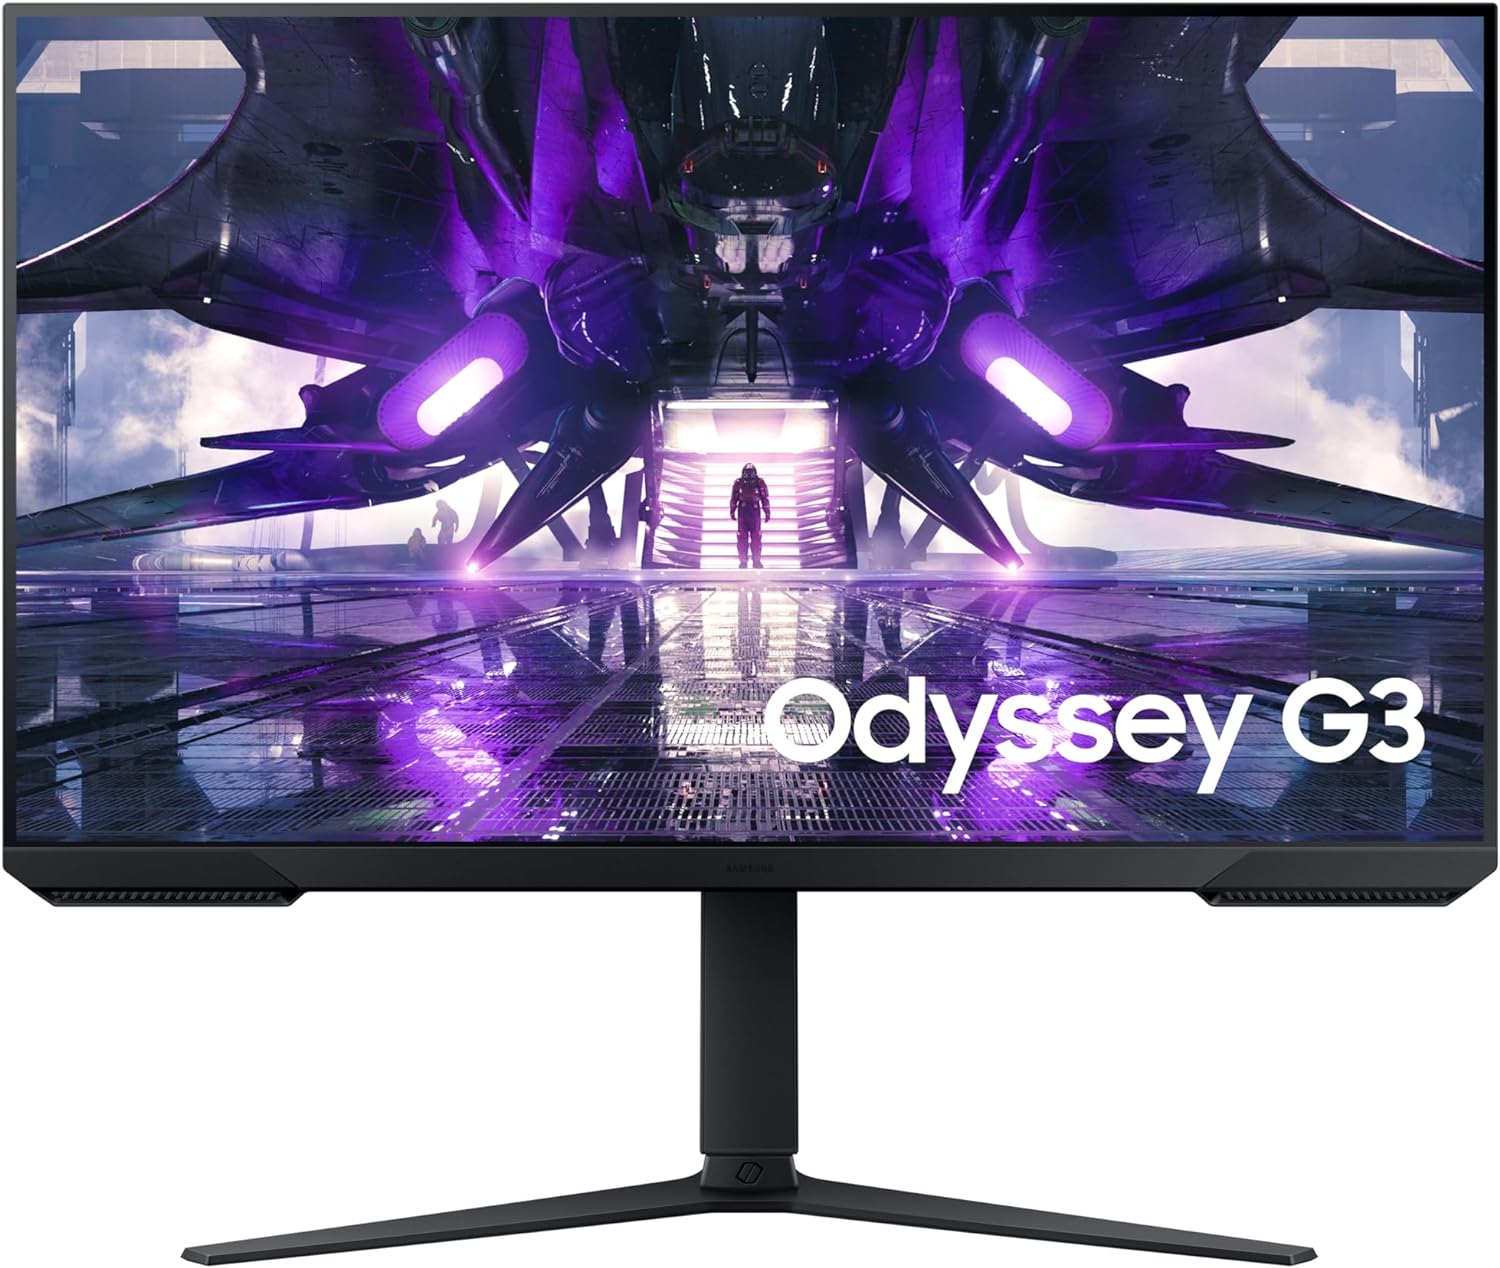 L'écran Gaming Samsung Odyssey G3 24 pouces en promotion avec -27